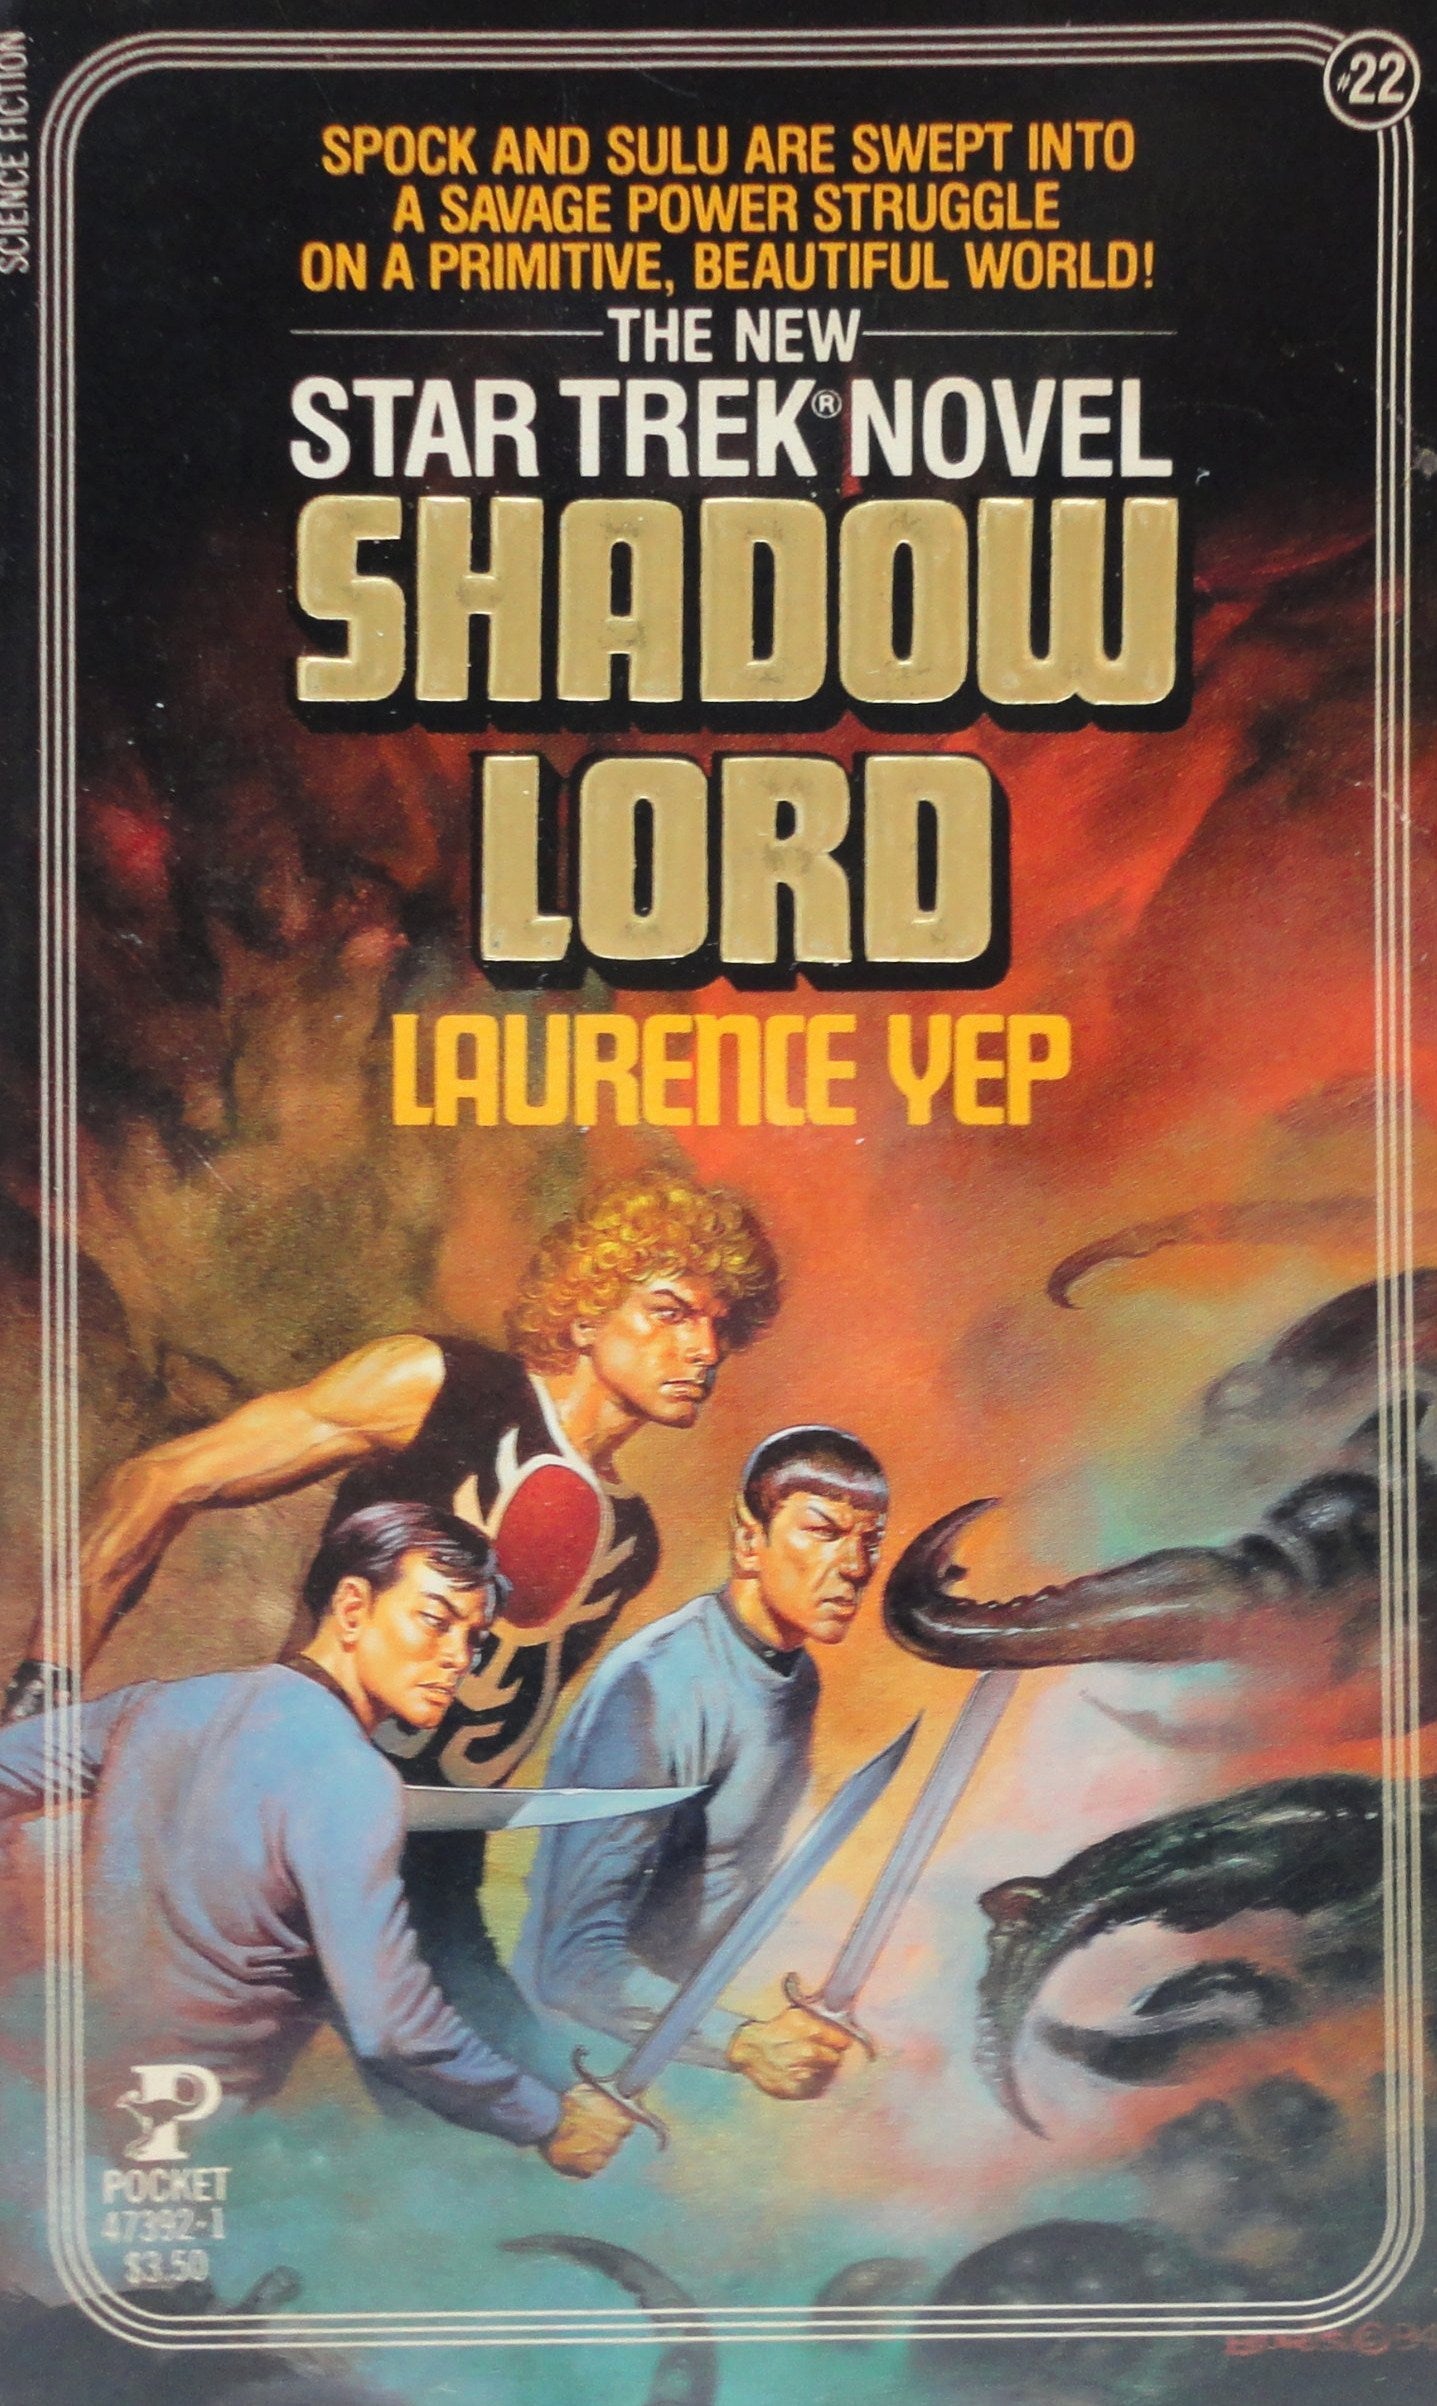 Livre ISBN 0671473921 Star Trek : The New Star Trek Novel # 22 : Shadow Lord (Laurence Yep)